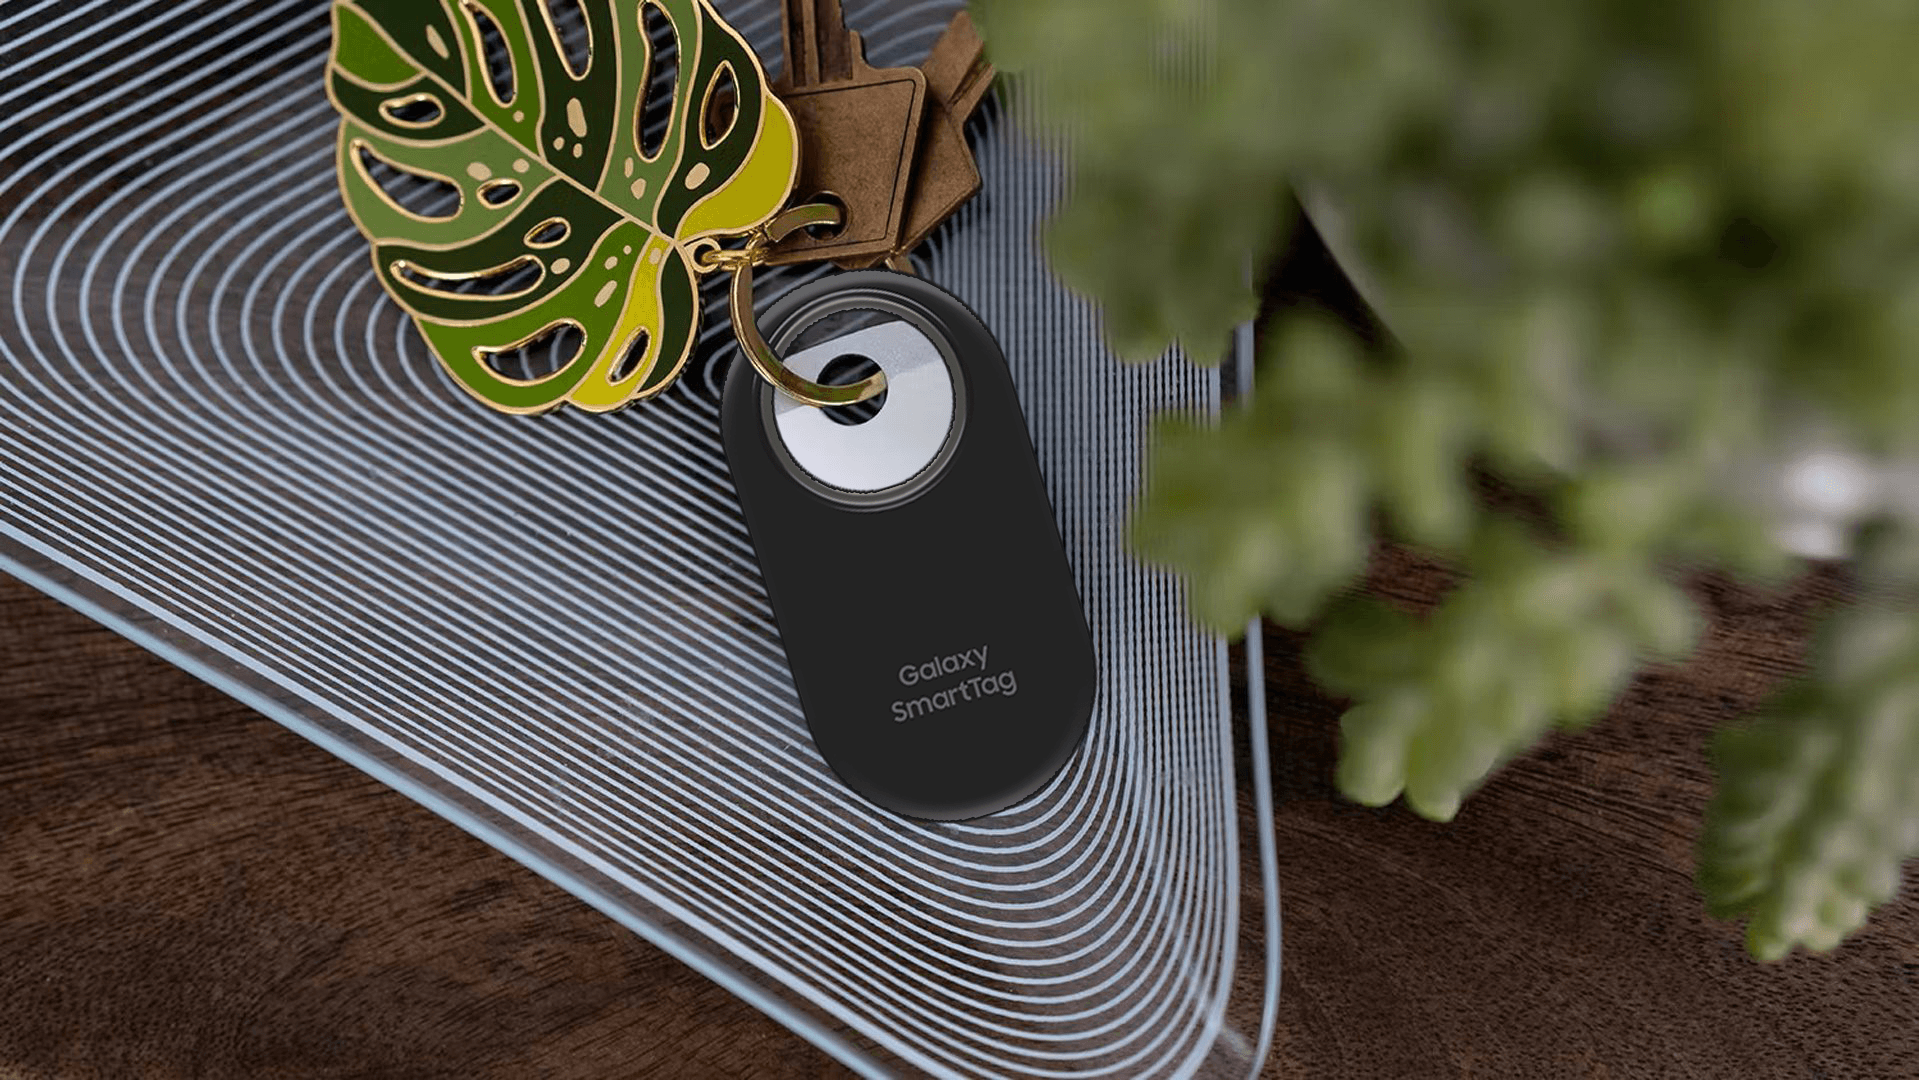 Galaxy SmartTag Black, Bluetooth Tracker